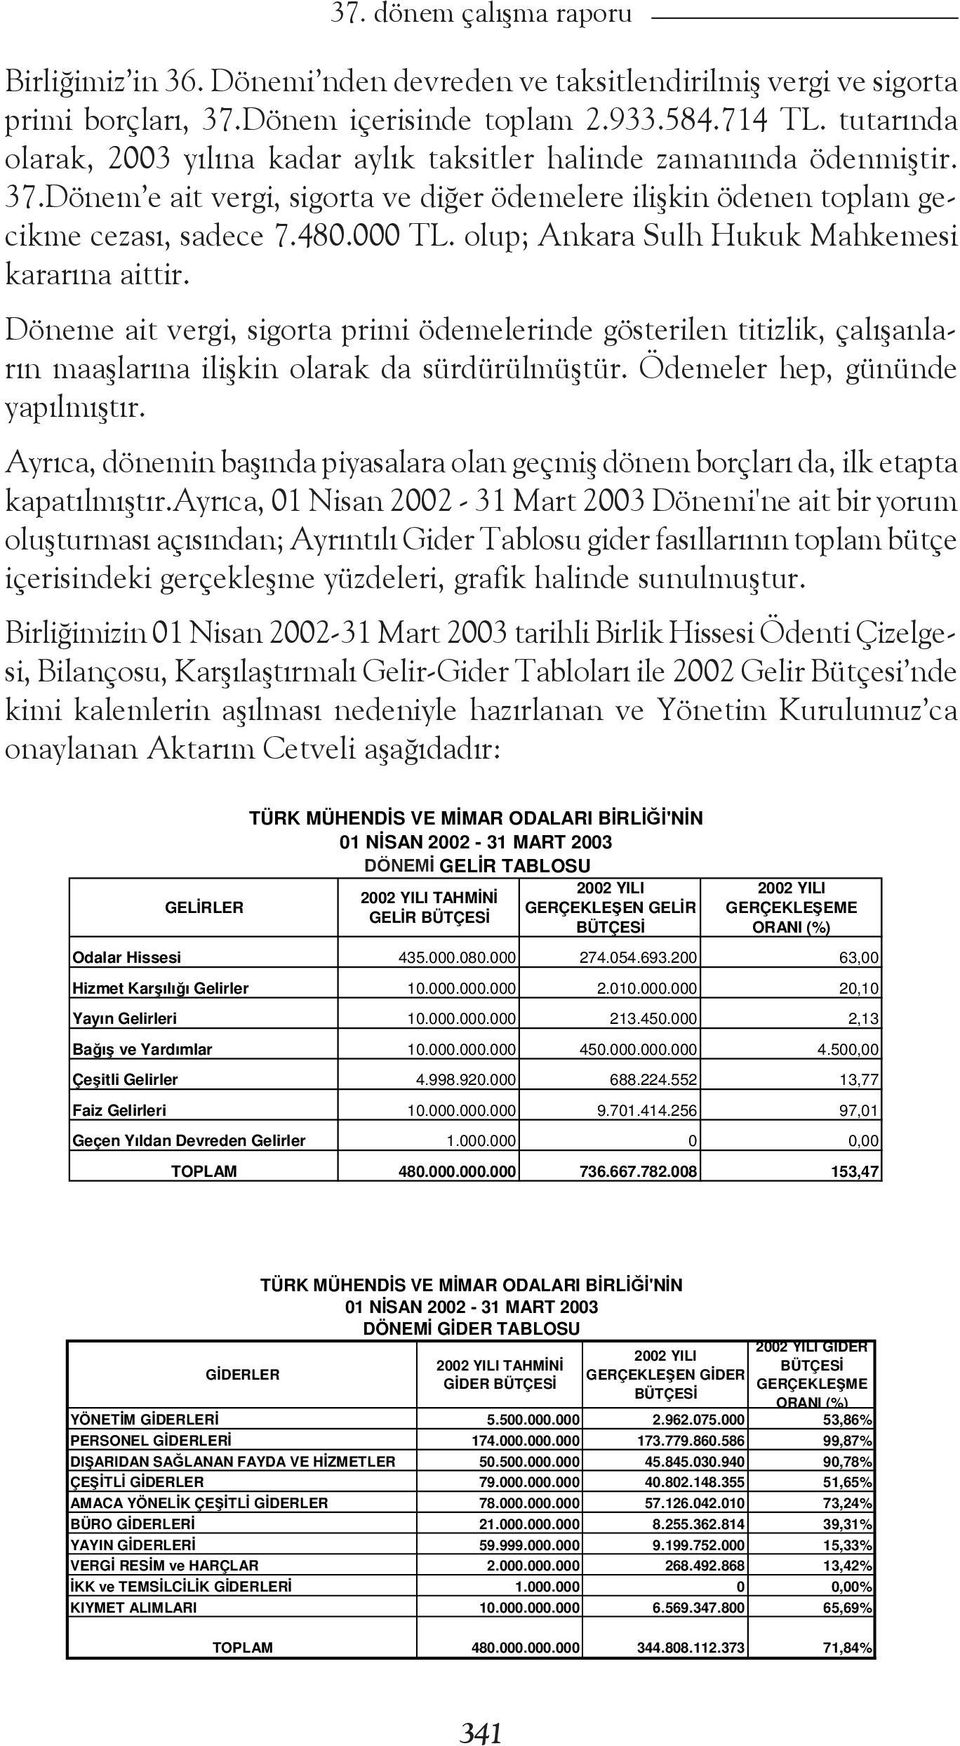 olup; Ankara Sulh Hukuk Mahkemesi kararına aittir. Döneme ait vergi, sigorta primi ödemelerinde gösterilen titizlik, çalışanların maaşlarına ilişkin olarak da sürdürülmüştür.